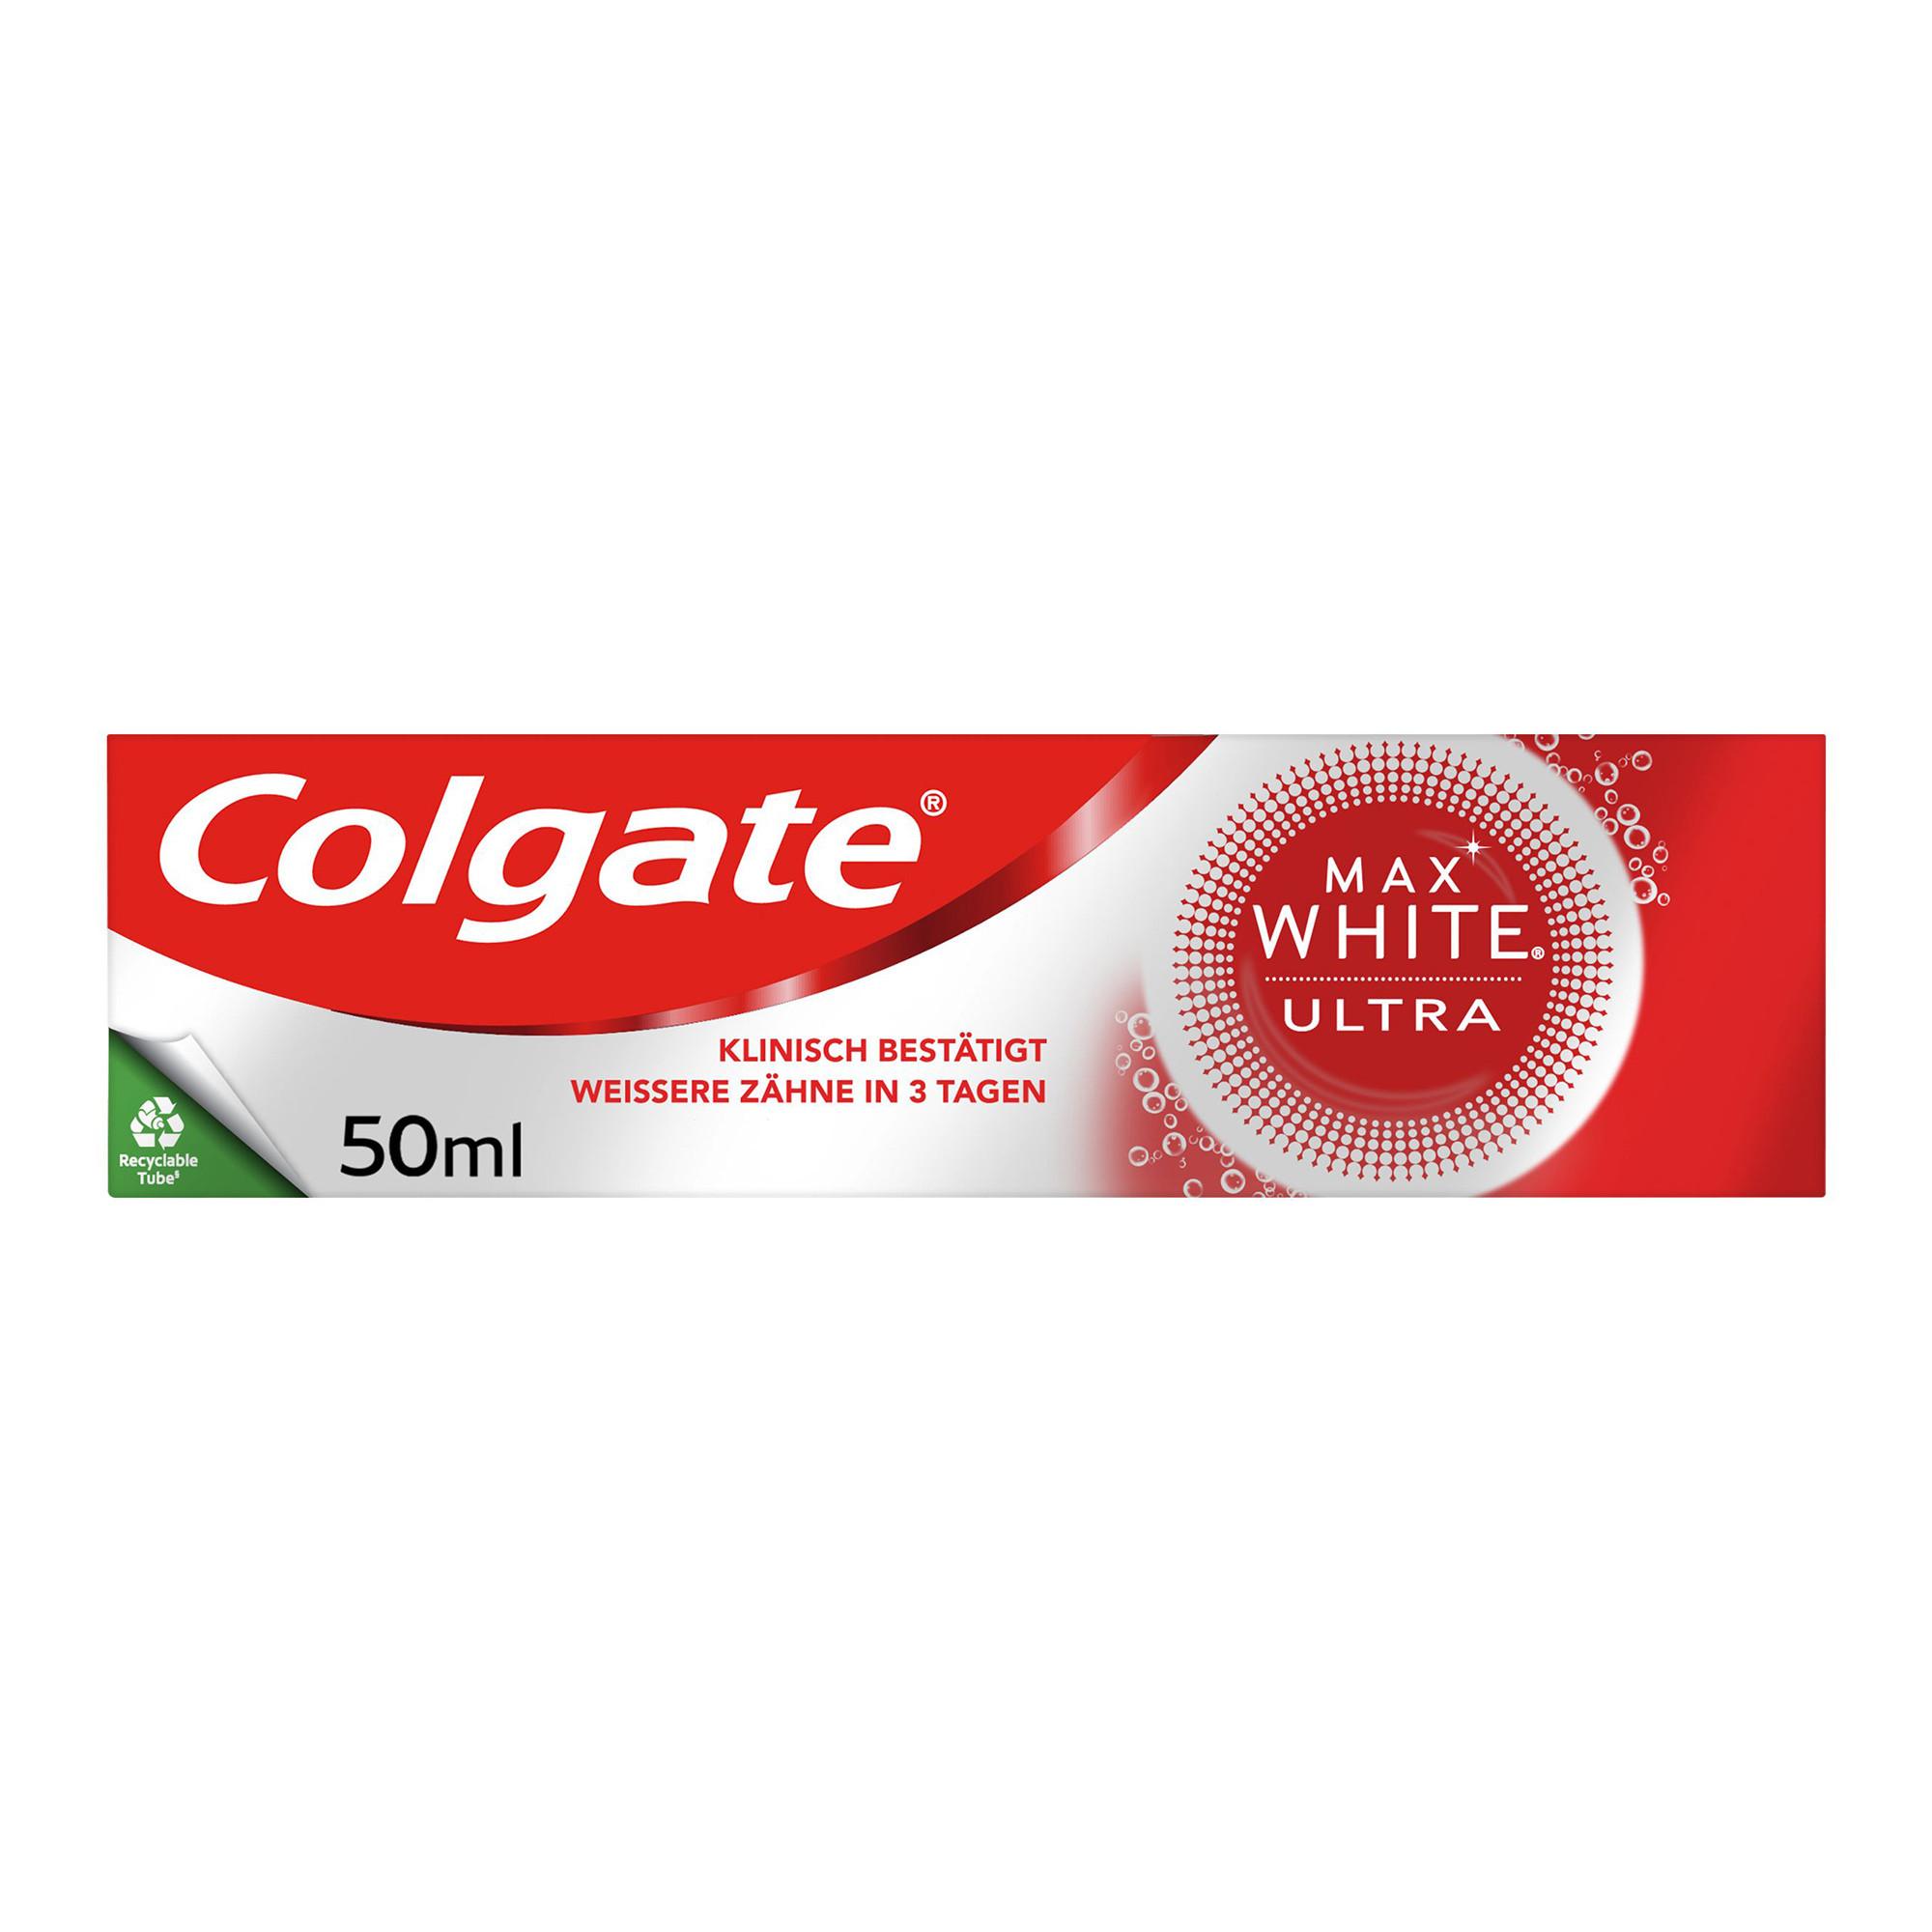 Image of Colgate Colgate Max White Ultra Active Foam Whitening Zahnpasta, weissere Zähne in 3 Tagen - 50ml